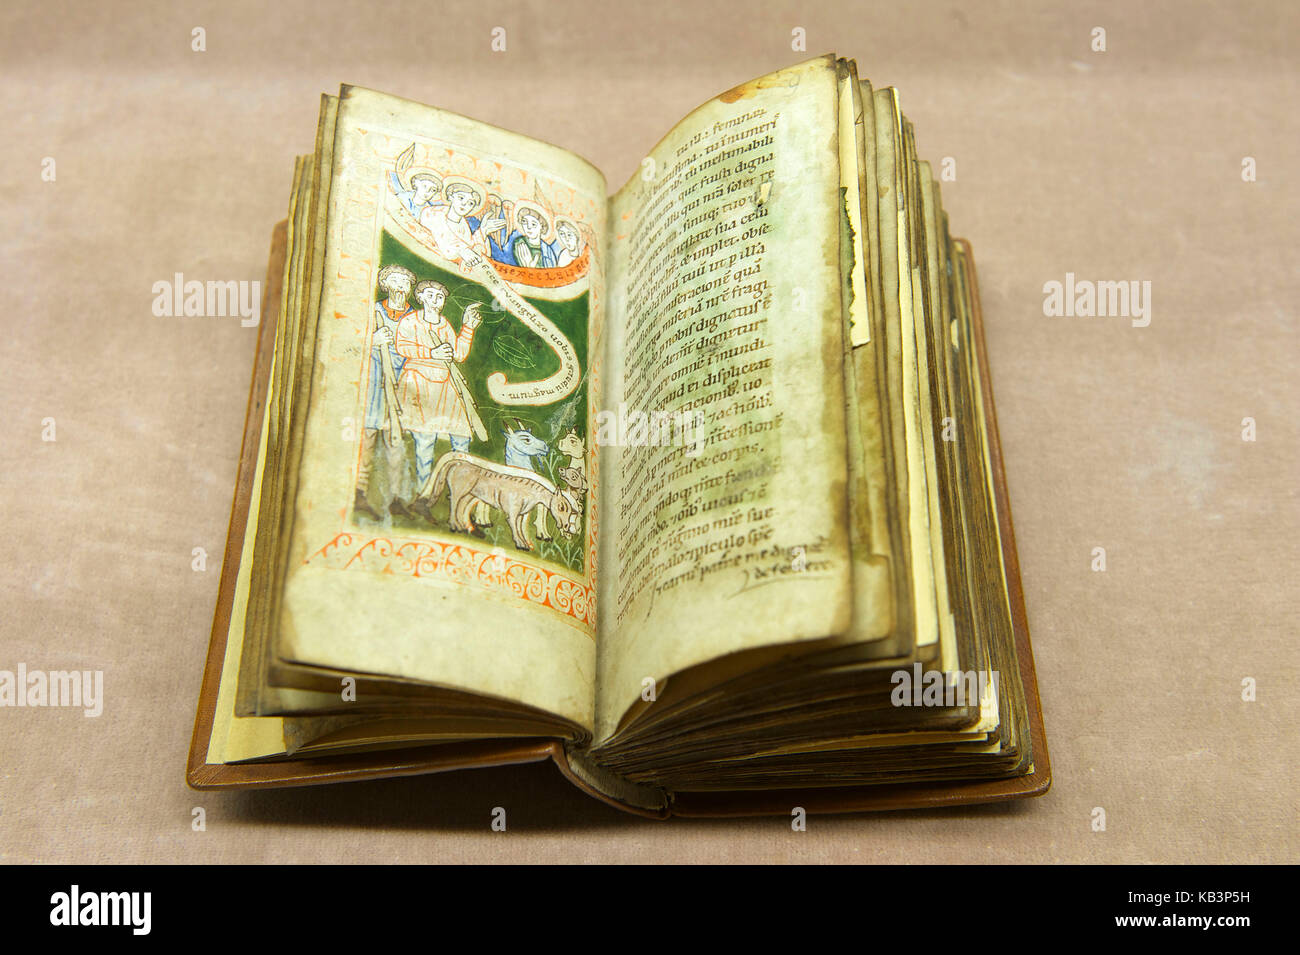 Frankreich, Bas Rhin, dieffenthal, humanistische Bibliothek, Liber Precum aus dem 12 centtury, Handschrift auf Pergament mit verschiedenen Gebete Stockfoto